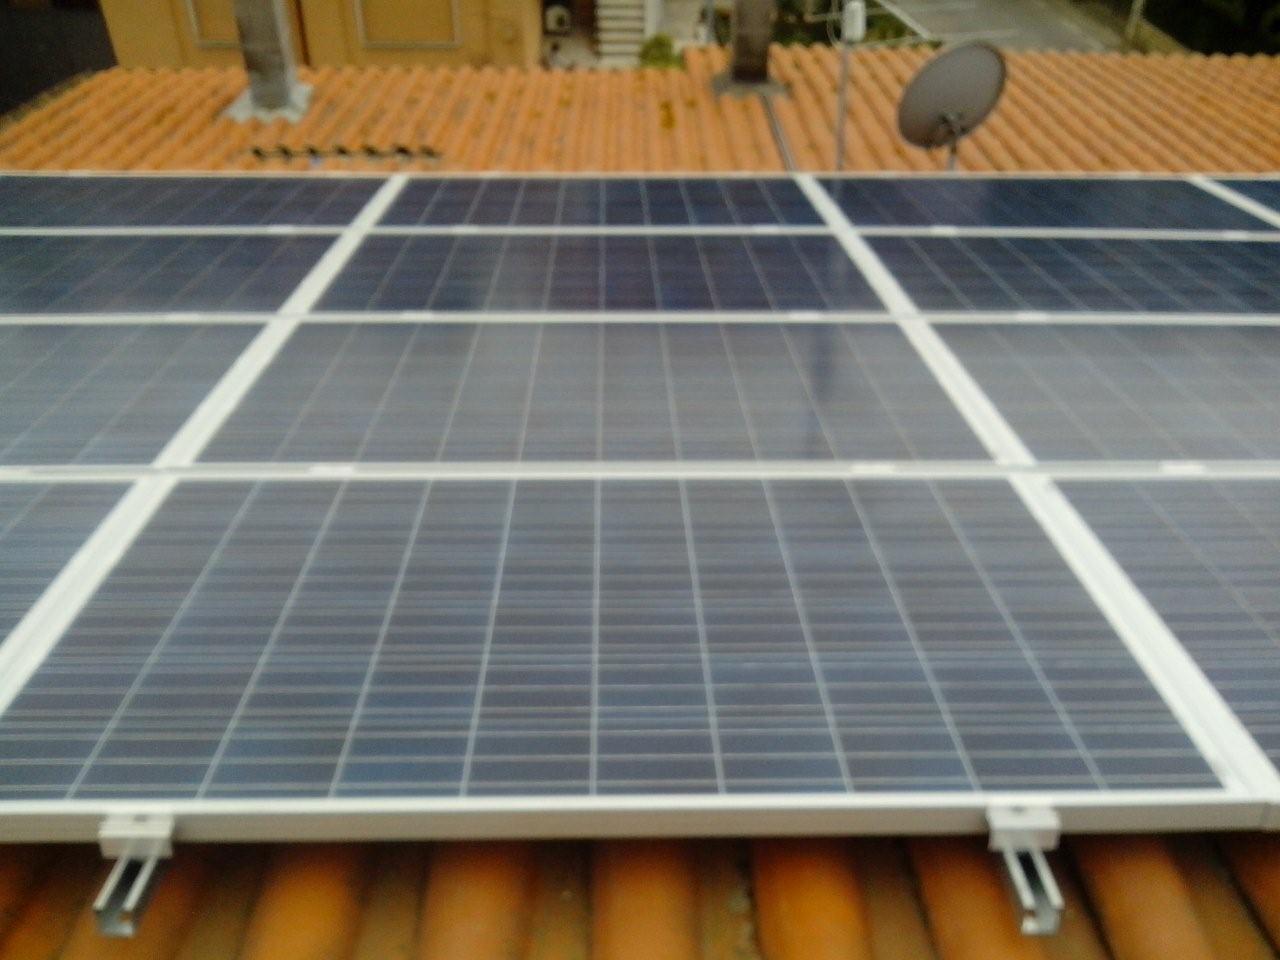 Impianto Impianti Solari Fotovoltaici 2016. Cogli le opportunità e la convenienza Vasanello Viterbo Lazio